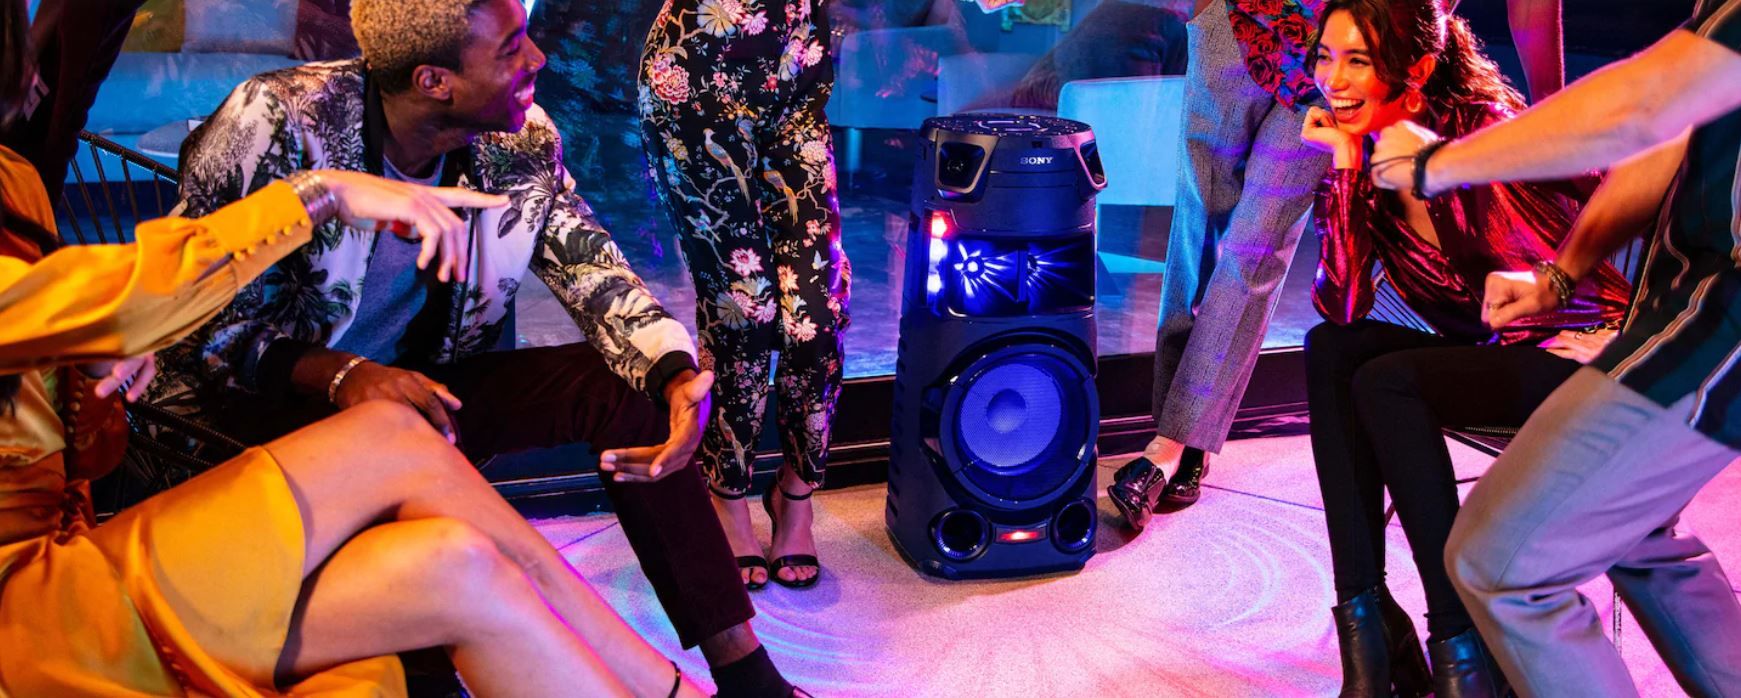  párty reproduktor sony mhc-v43d karaoke fiestable ovládání hlasem kytarový jack upevnění v repro stojanu světelné efekty 